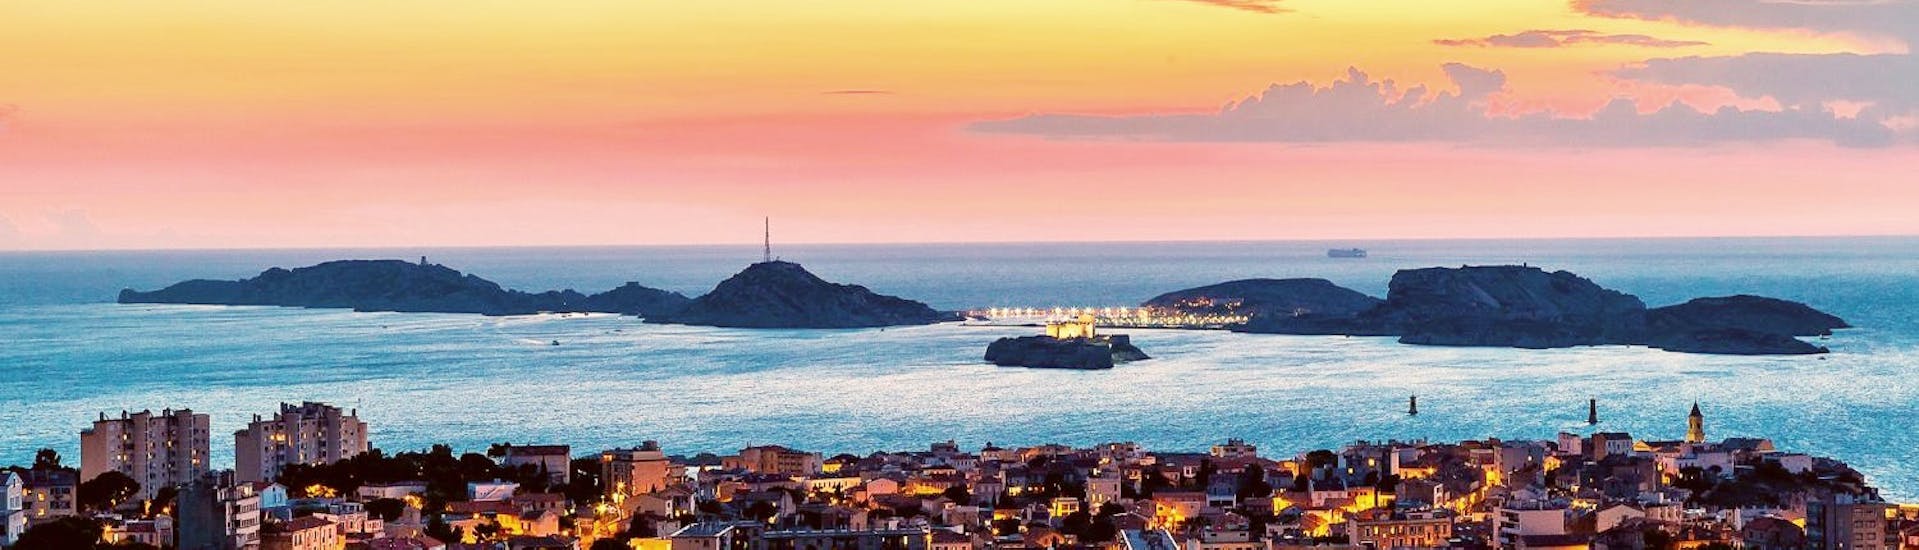 Boottocht van Marseille naar Frioul Archipelago met zonsondergang & toeristische attracties.